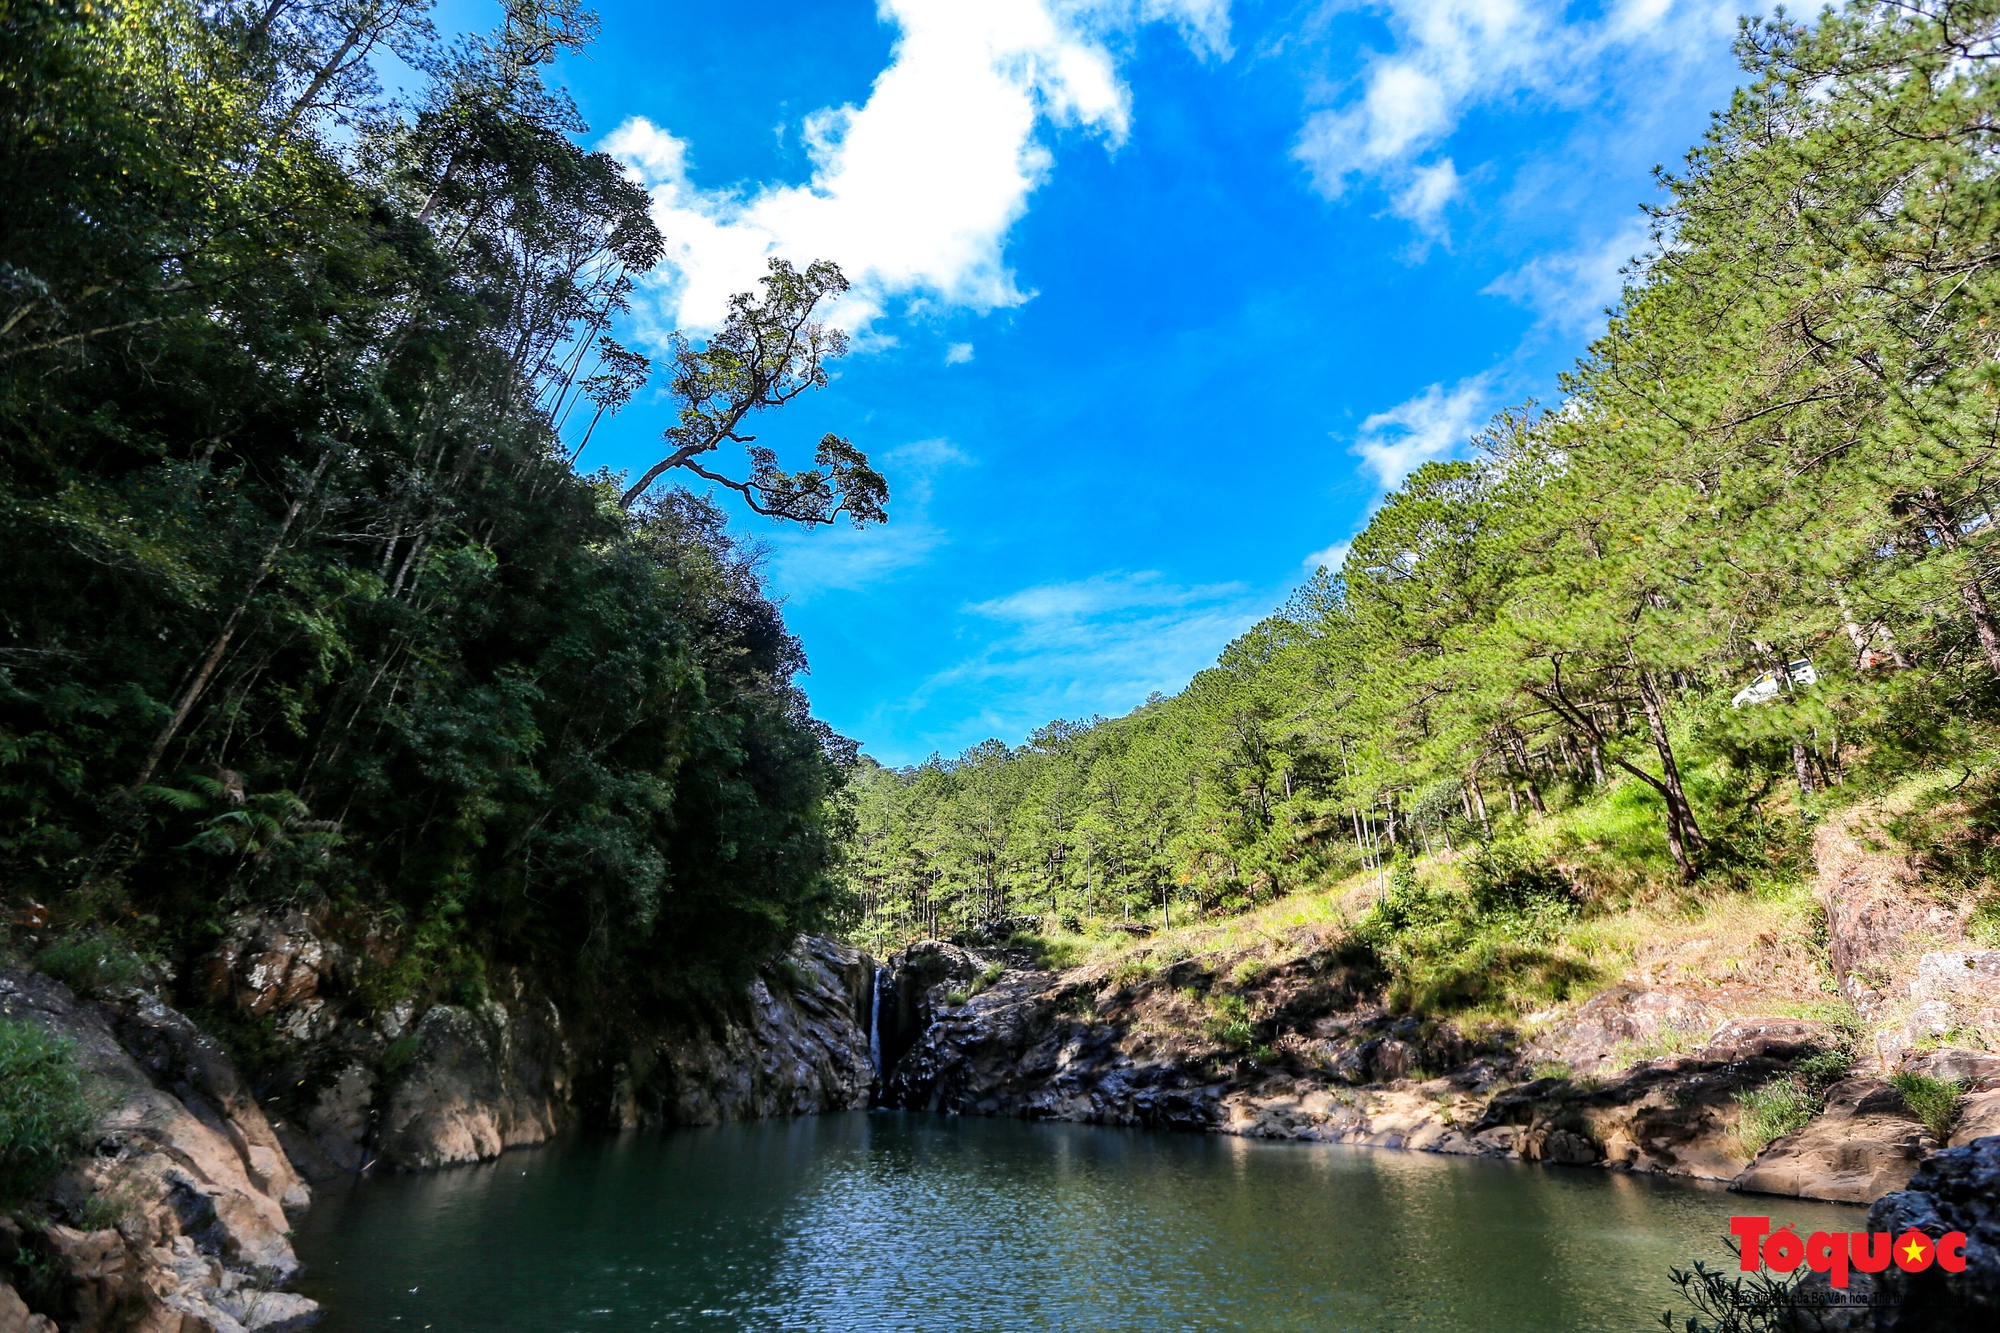 Thác Ankroet - một trong những thác nước đẹp nhất ở Đà Lạt. Với chiều cao lên đến 55m, thác Ankroet là nơi để đến thư giãn và tận hưởng phong cảnh tuyệt đẹp. Hãy cùng đến khám phá ngay!